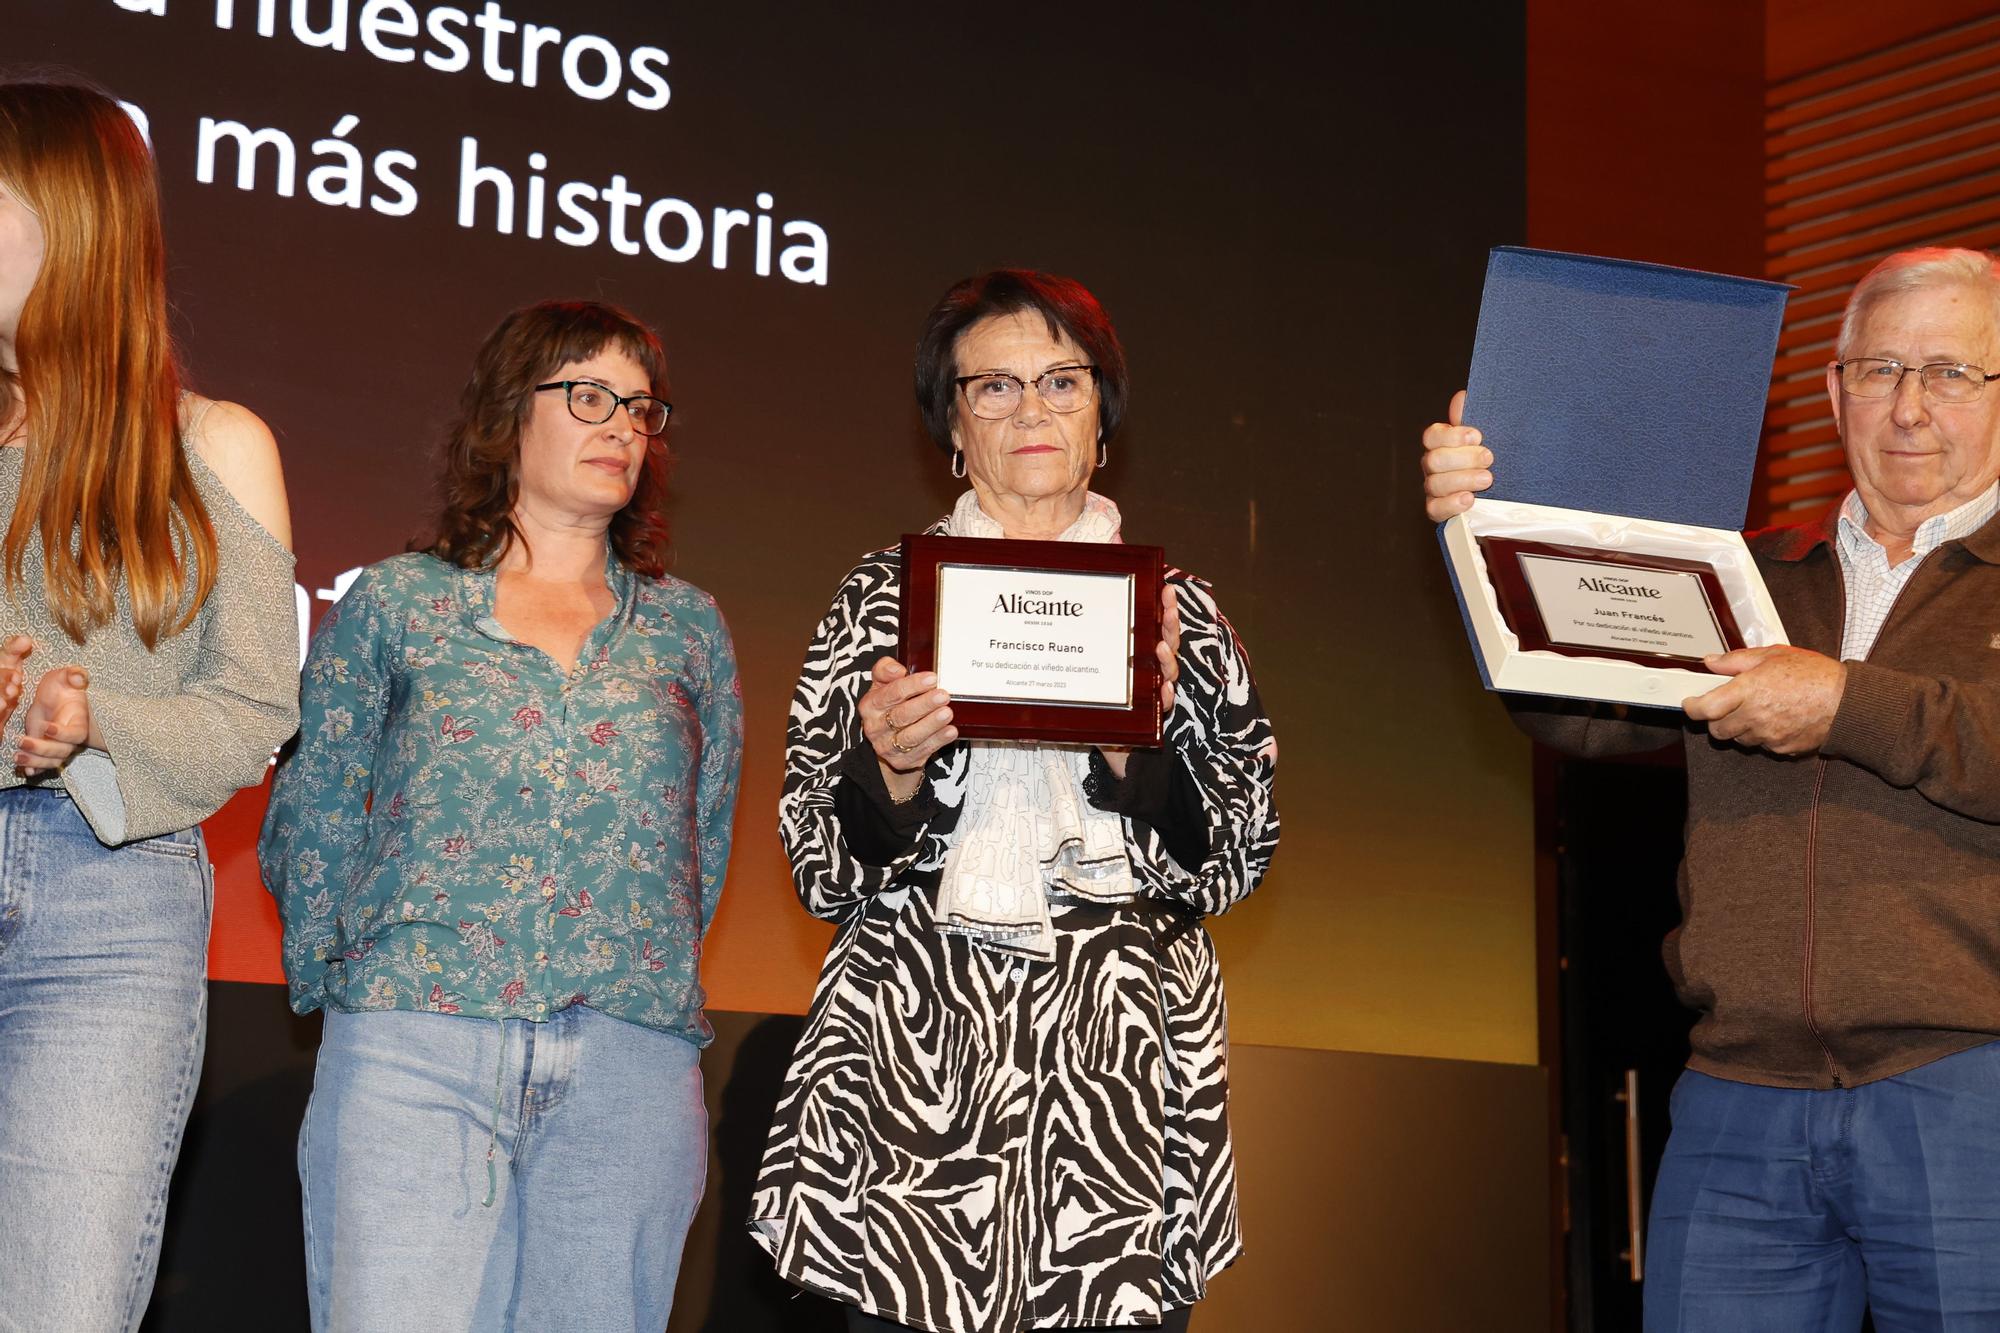 Premios Vinos Alicante DOP 2022